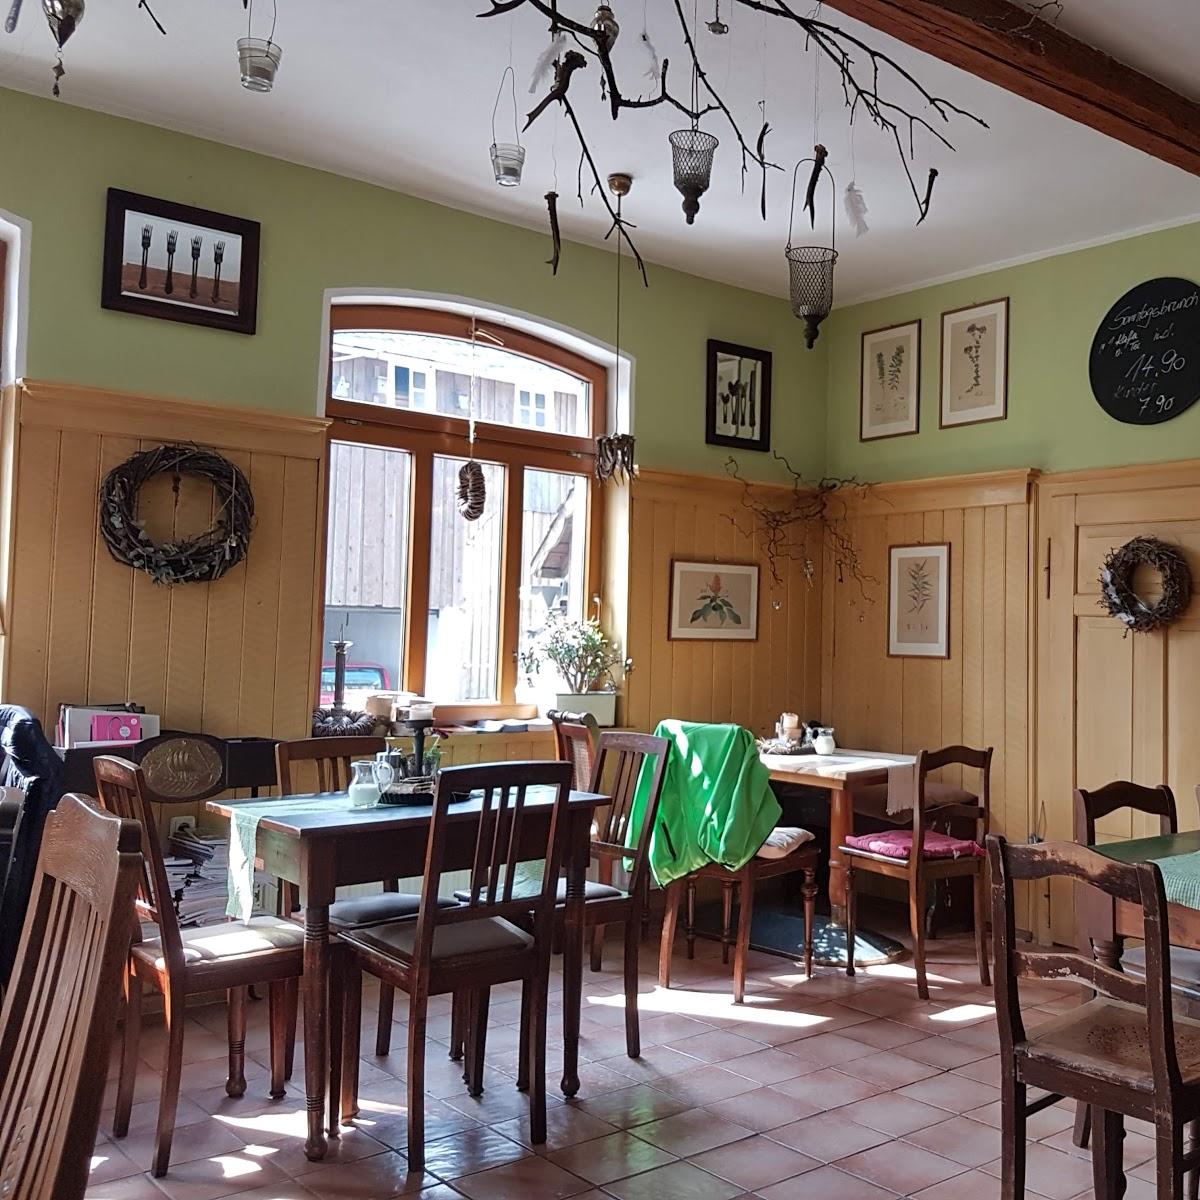 Restaurant "Wildberg Café Inh. Stefanie Traut" in Tettau